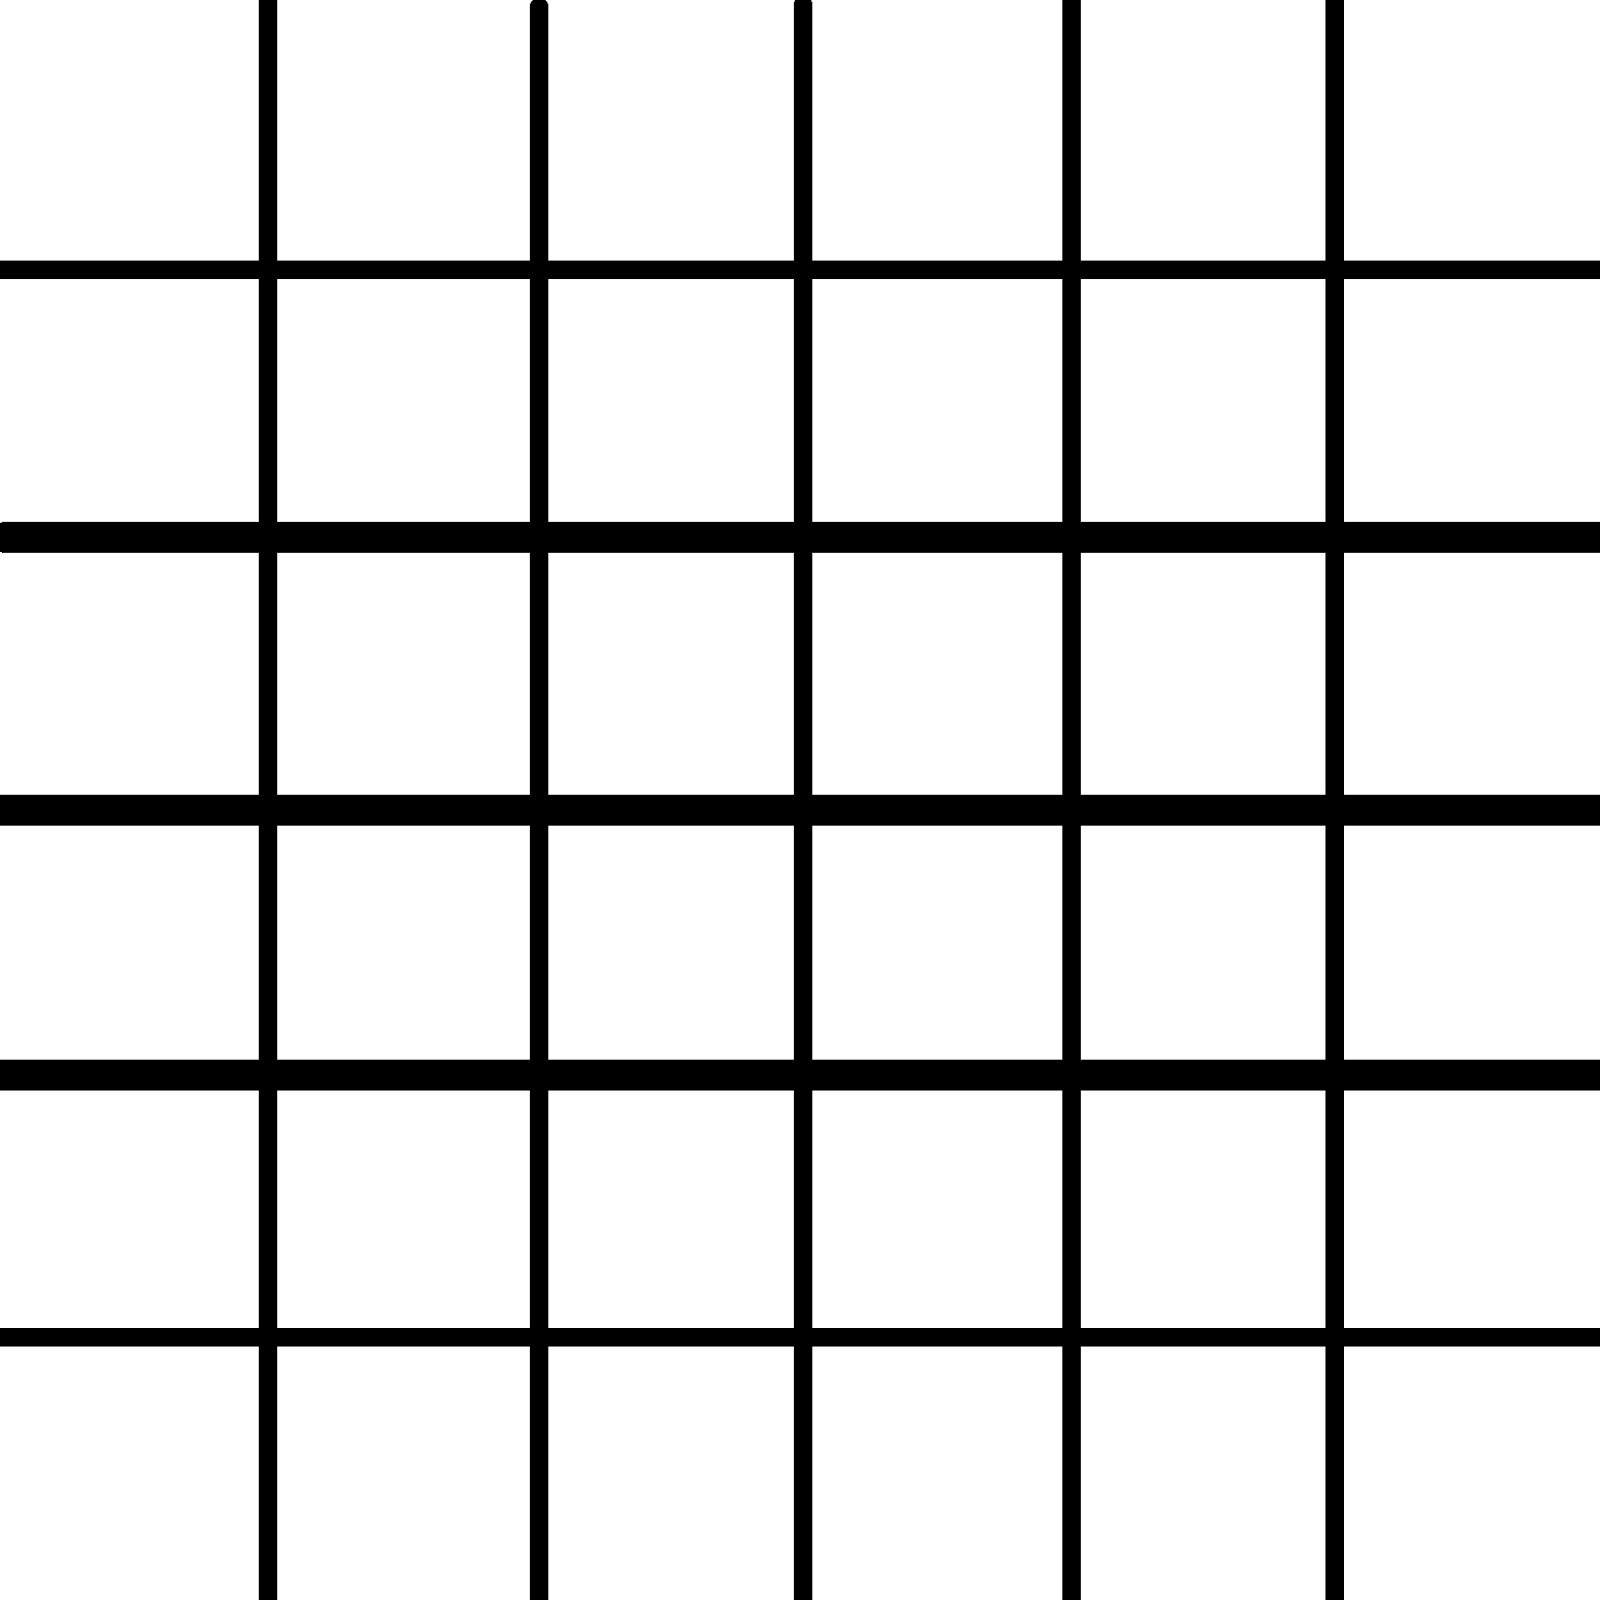 30 16 10 х. Таблица квадратная с пустыми клеточками. Таблица квадратов пустая. Сетка клетки для кроссворда. Таблица из квадратов без фона.